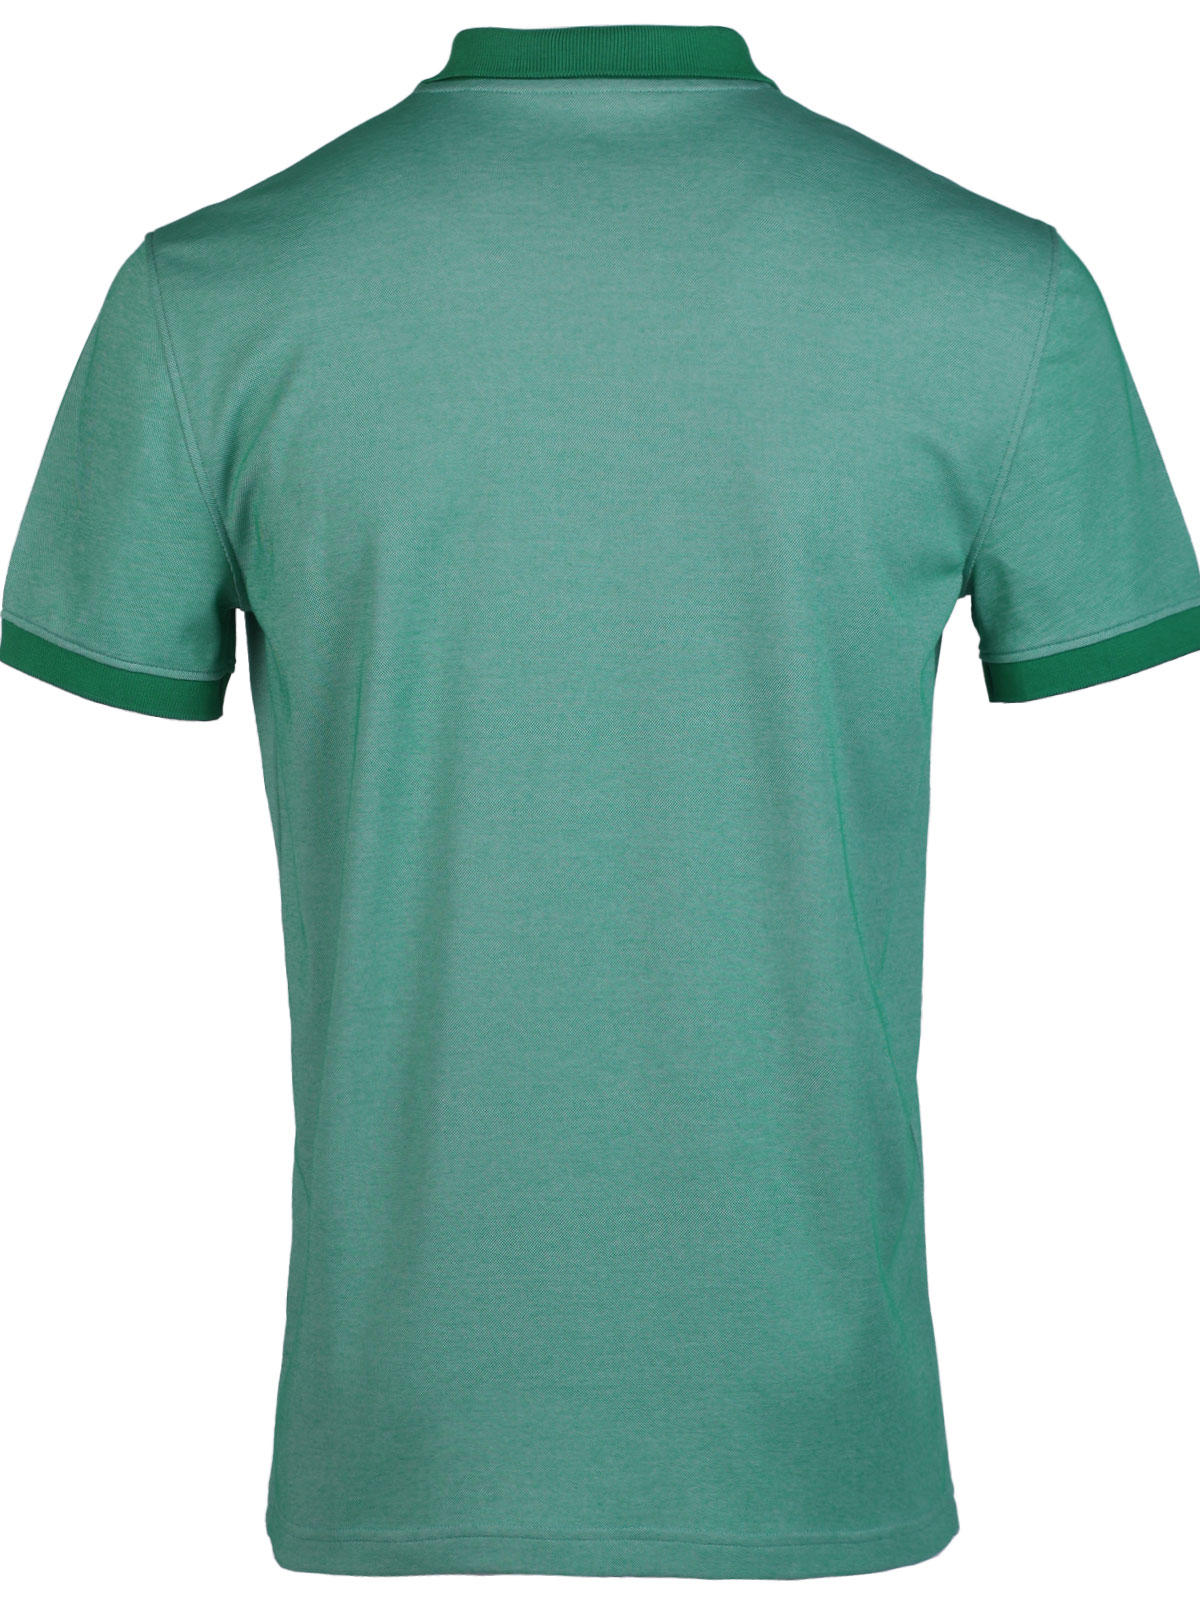 Ανδρικό tshirt σε πράσινο μελανζέ - 93453 € 38.81 img2